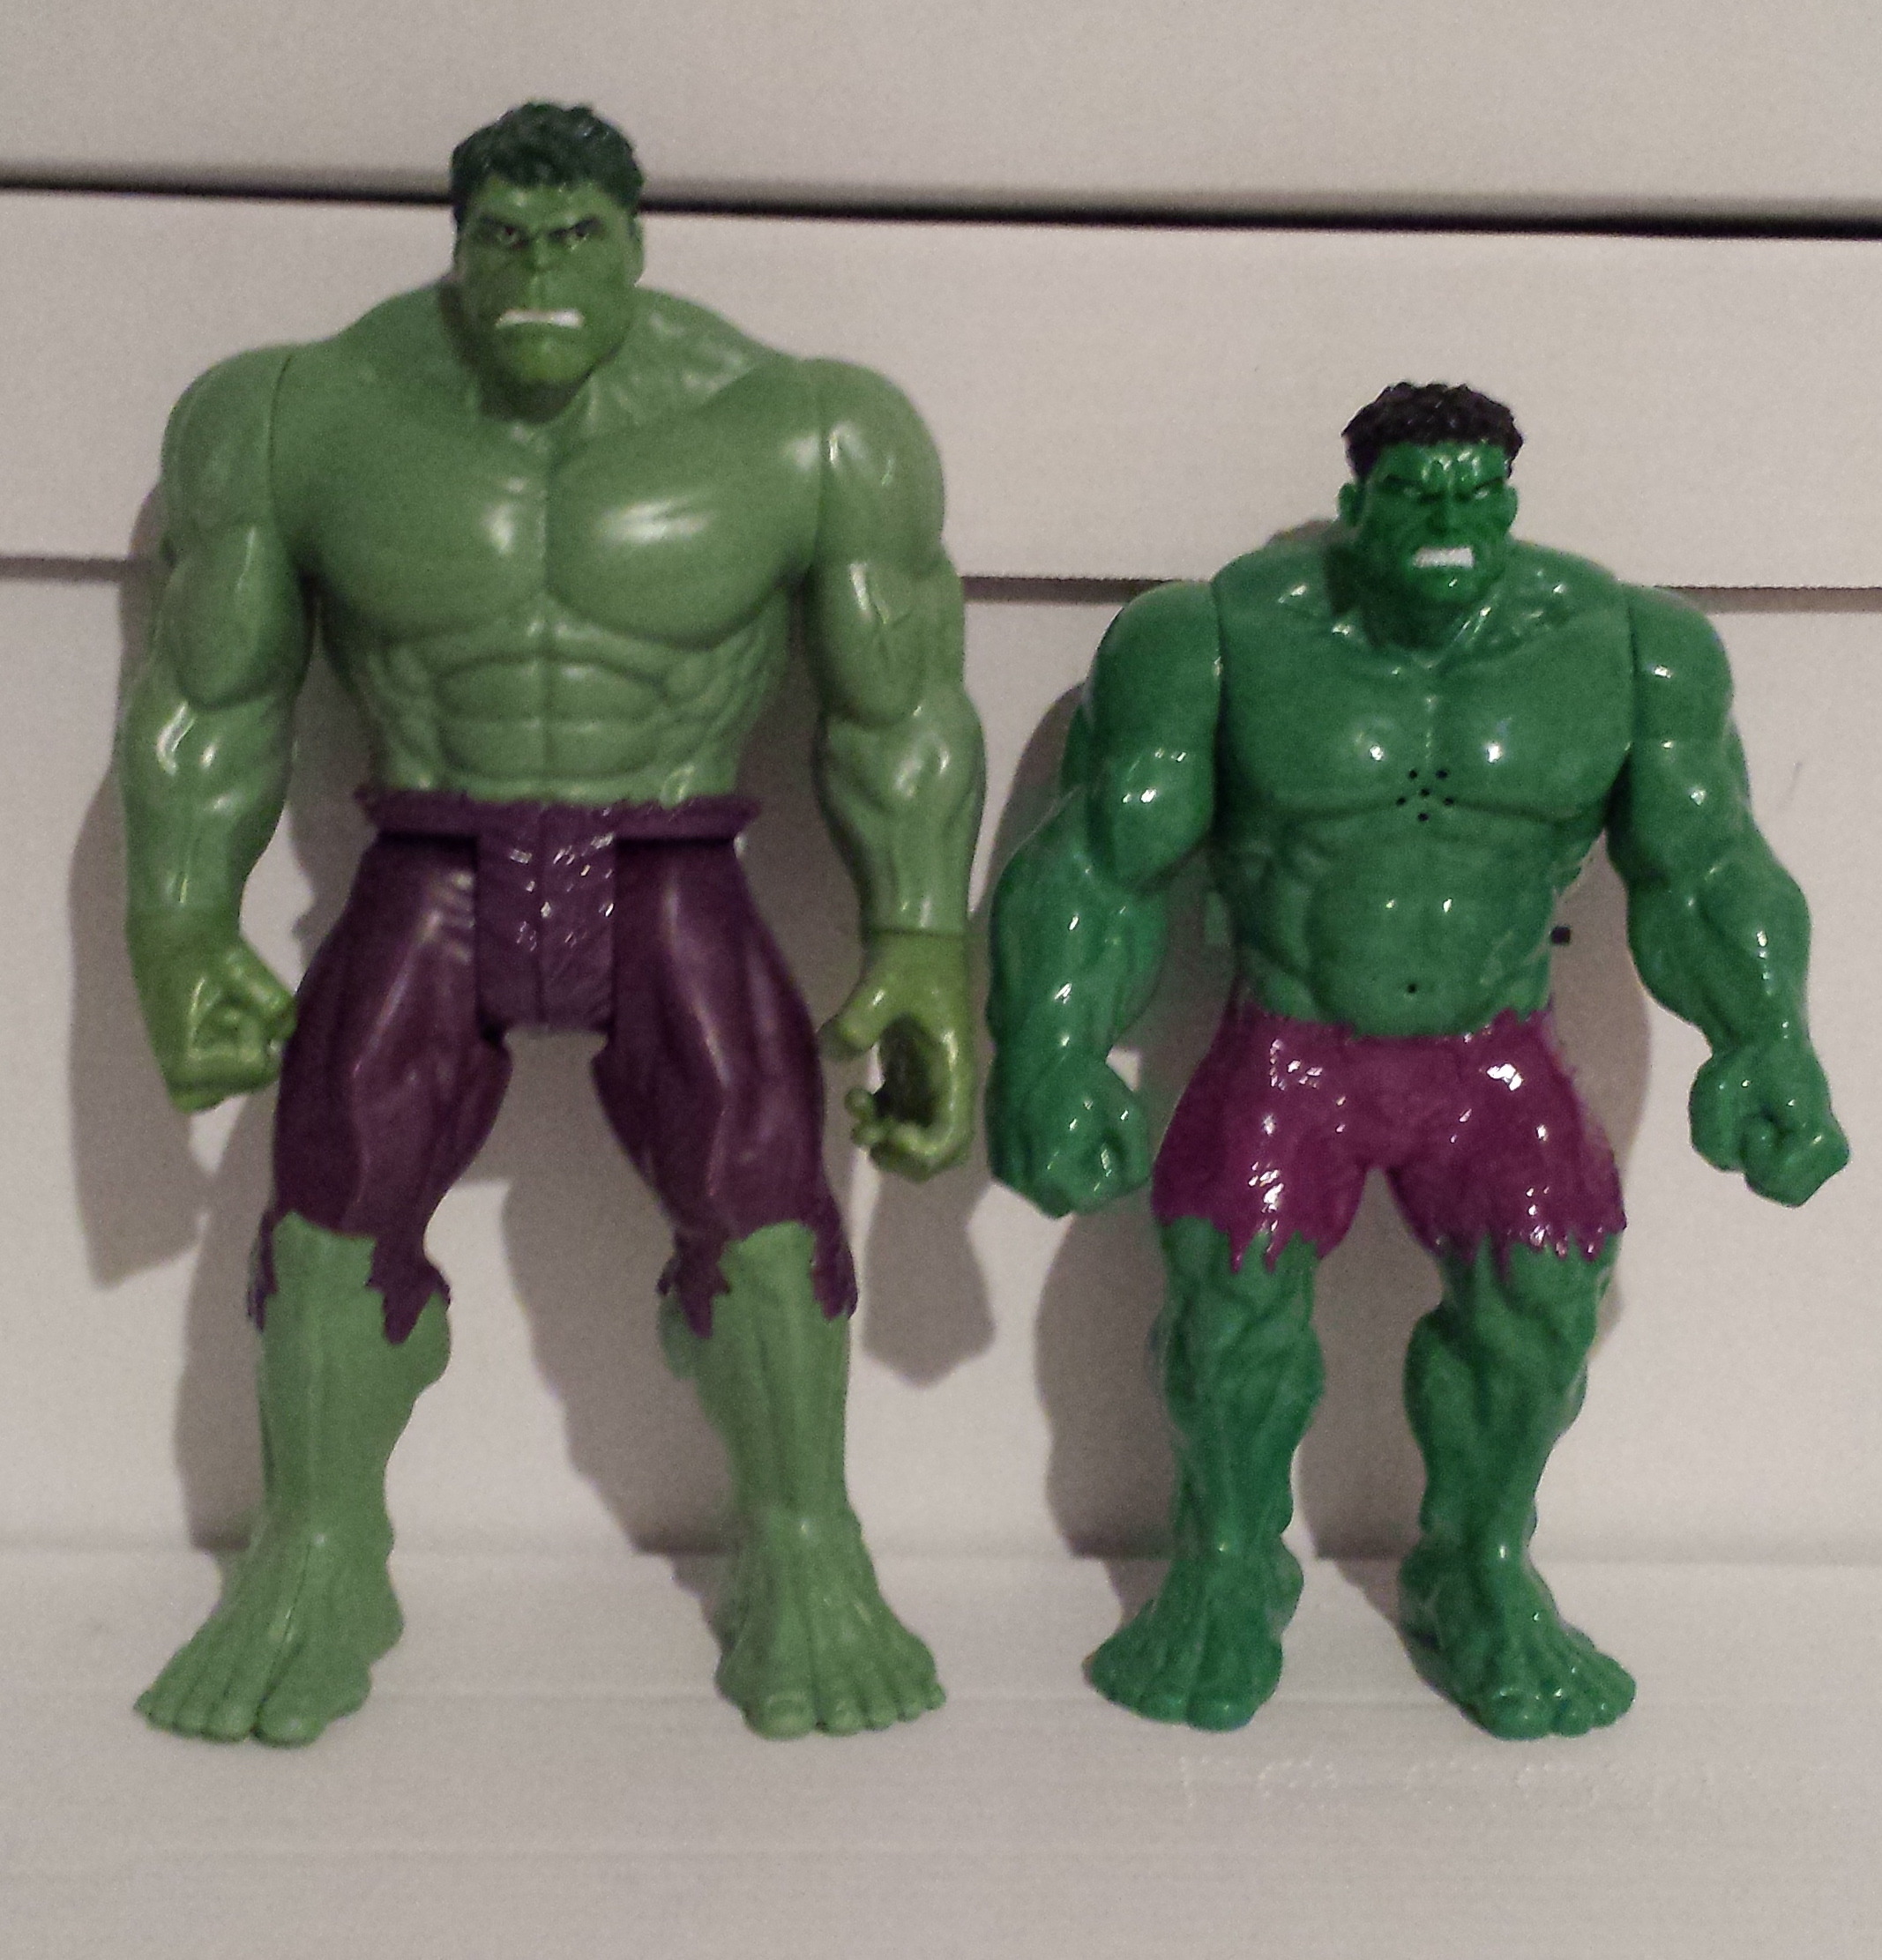 Пластилин халка. Hulk 2003 игрушка. Халк 2003 игрушка фигурка. Фигурка Халк Хасбро 2013. Hasbro 2009 Hulk.